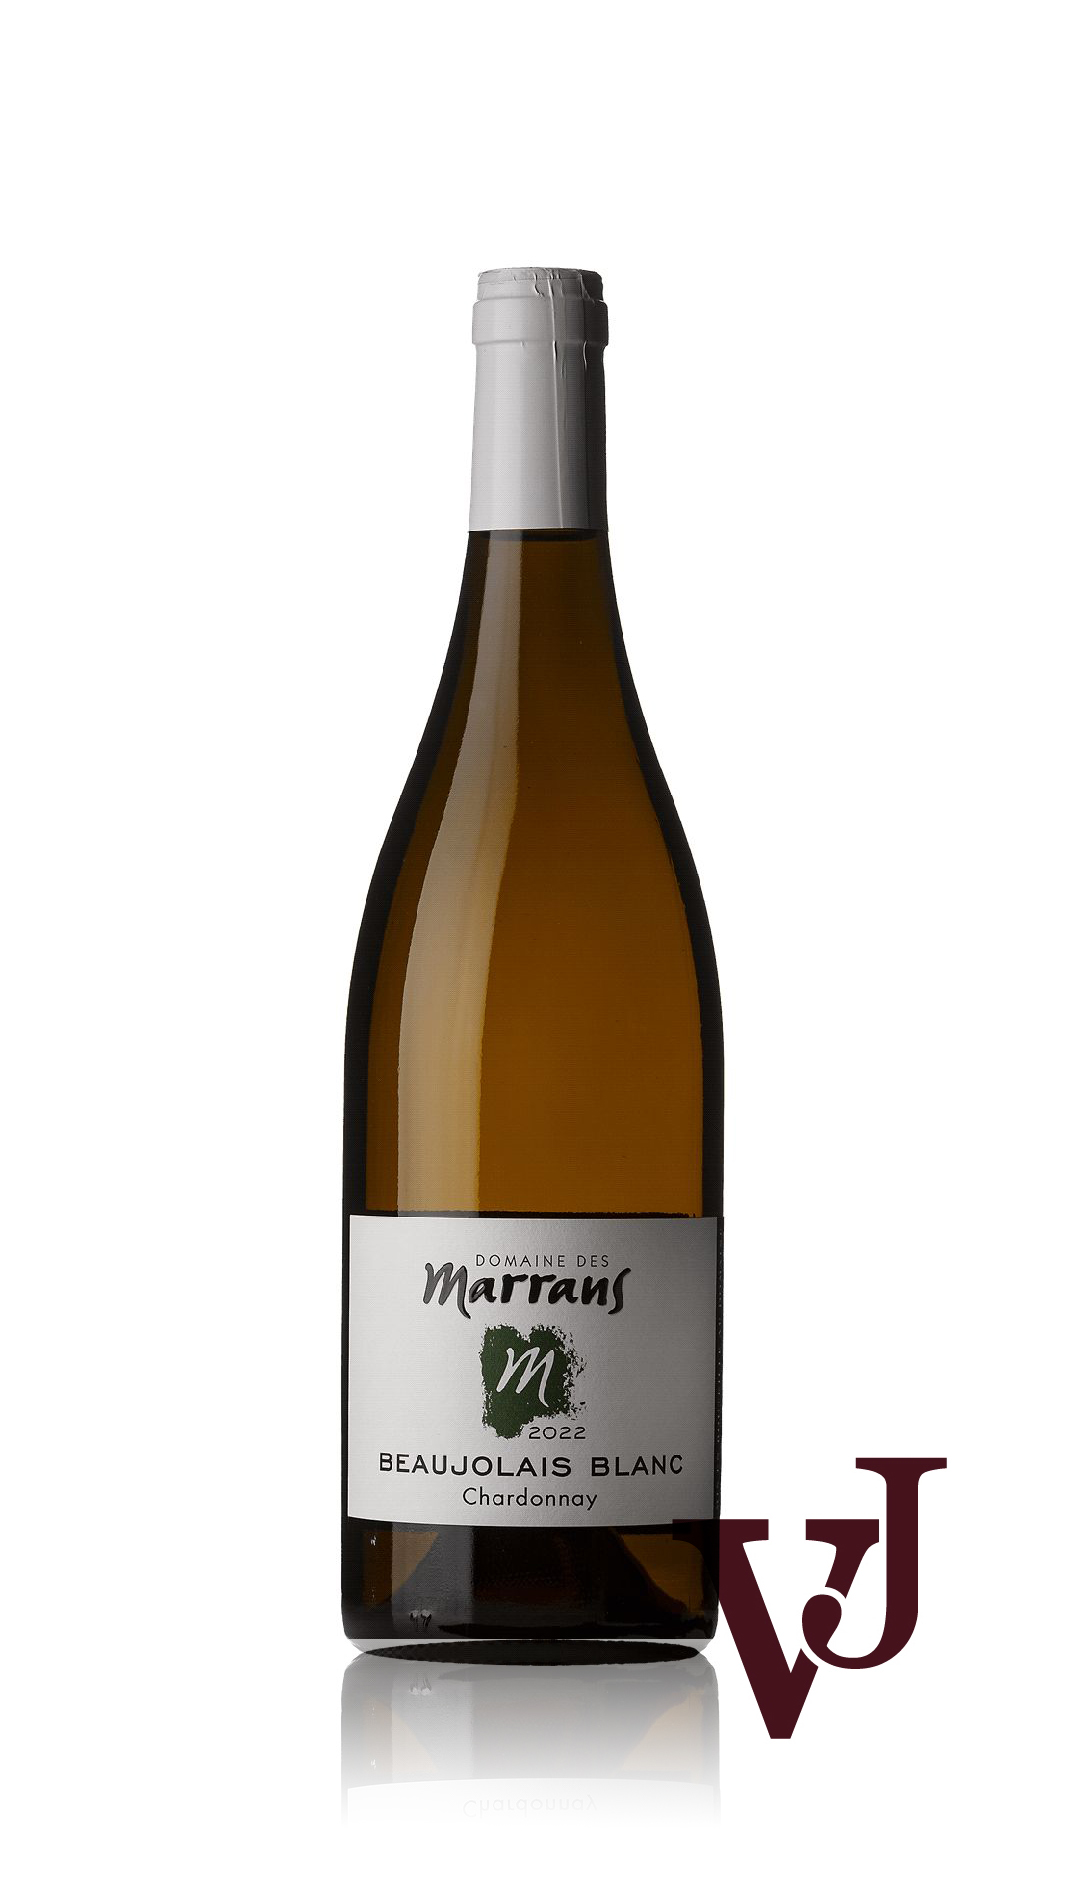 Vitt Vin - Beaujolais Blanc Domaine des Marrans 2022 artikel nummer 9473301 från producenten Domaine des Marrans från området Frankrike.